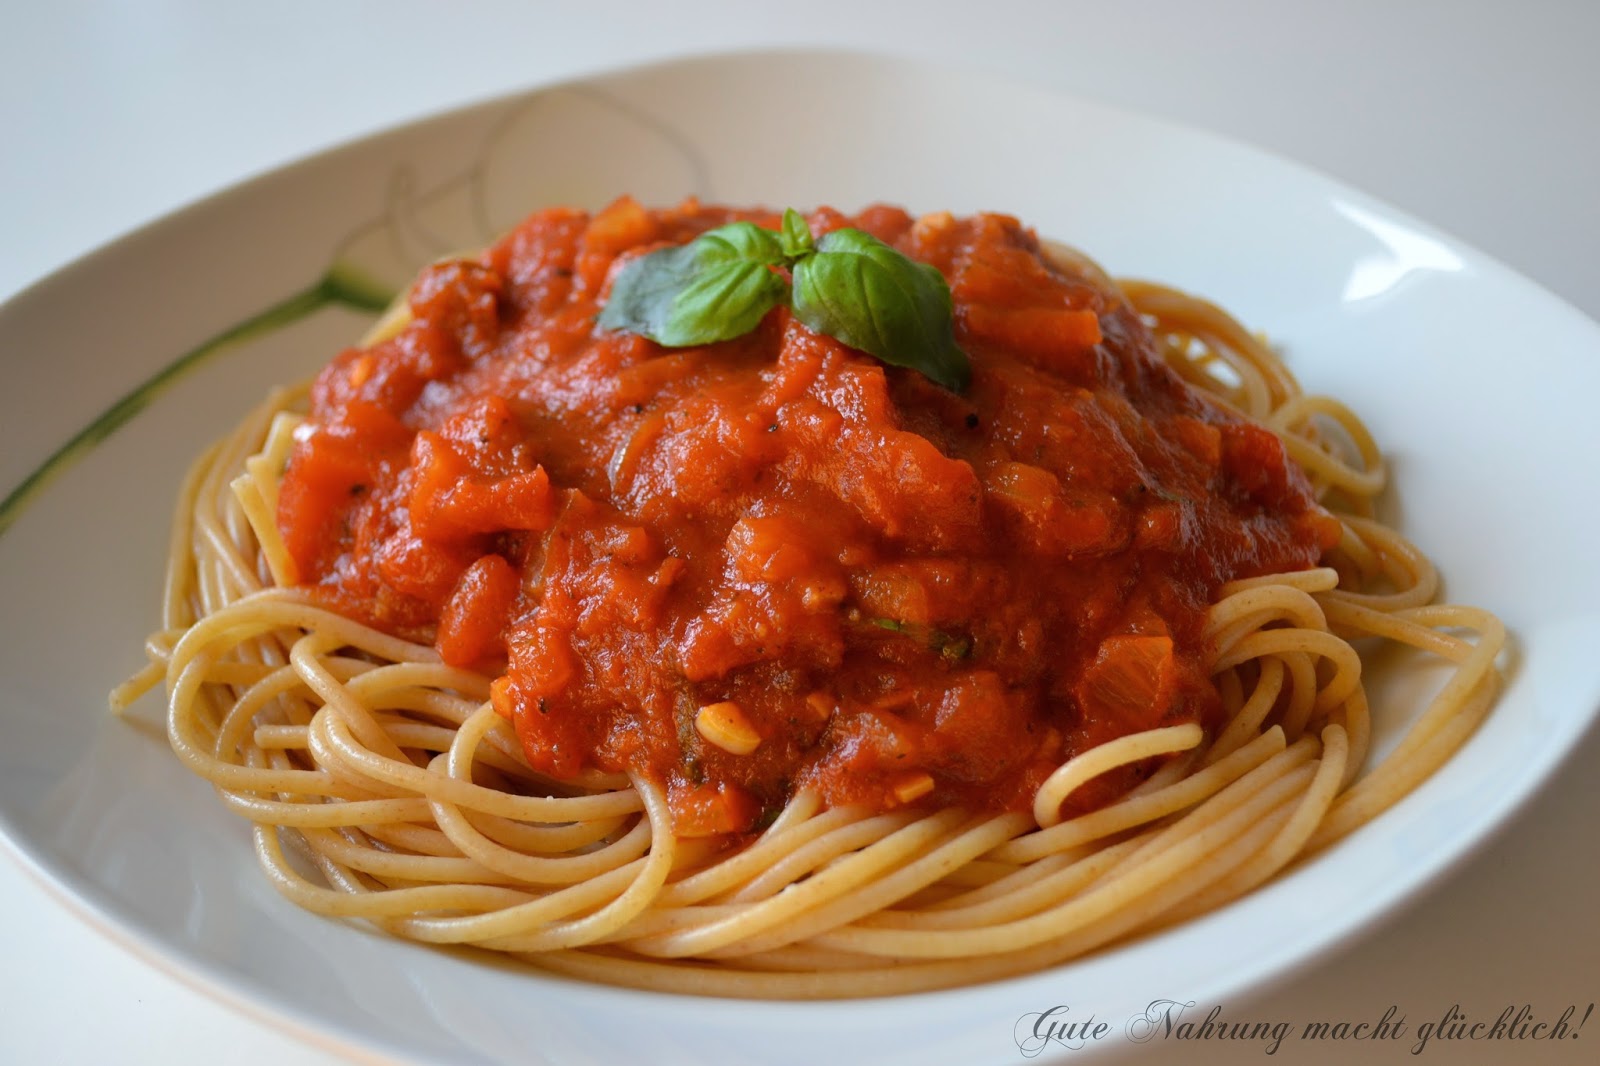 Gute Nahrung macht glücklich : Spaghetti mit Tomatensauce